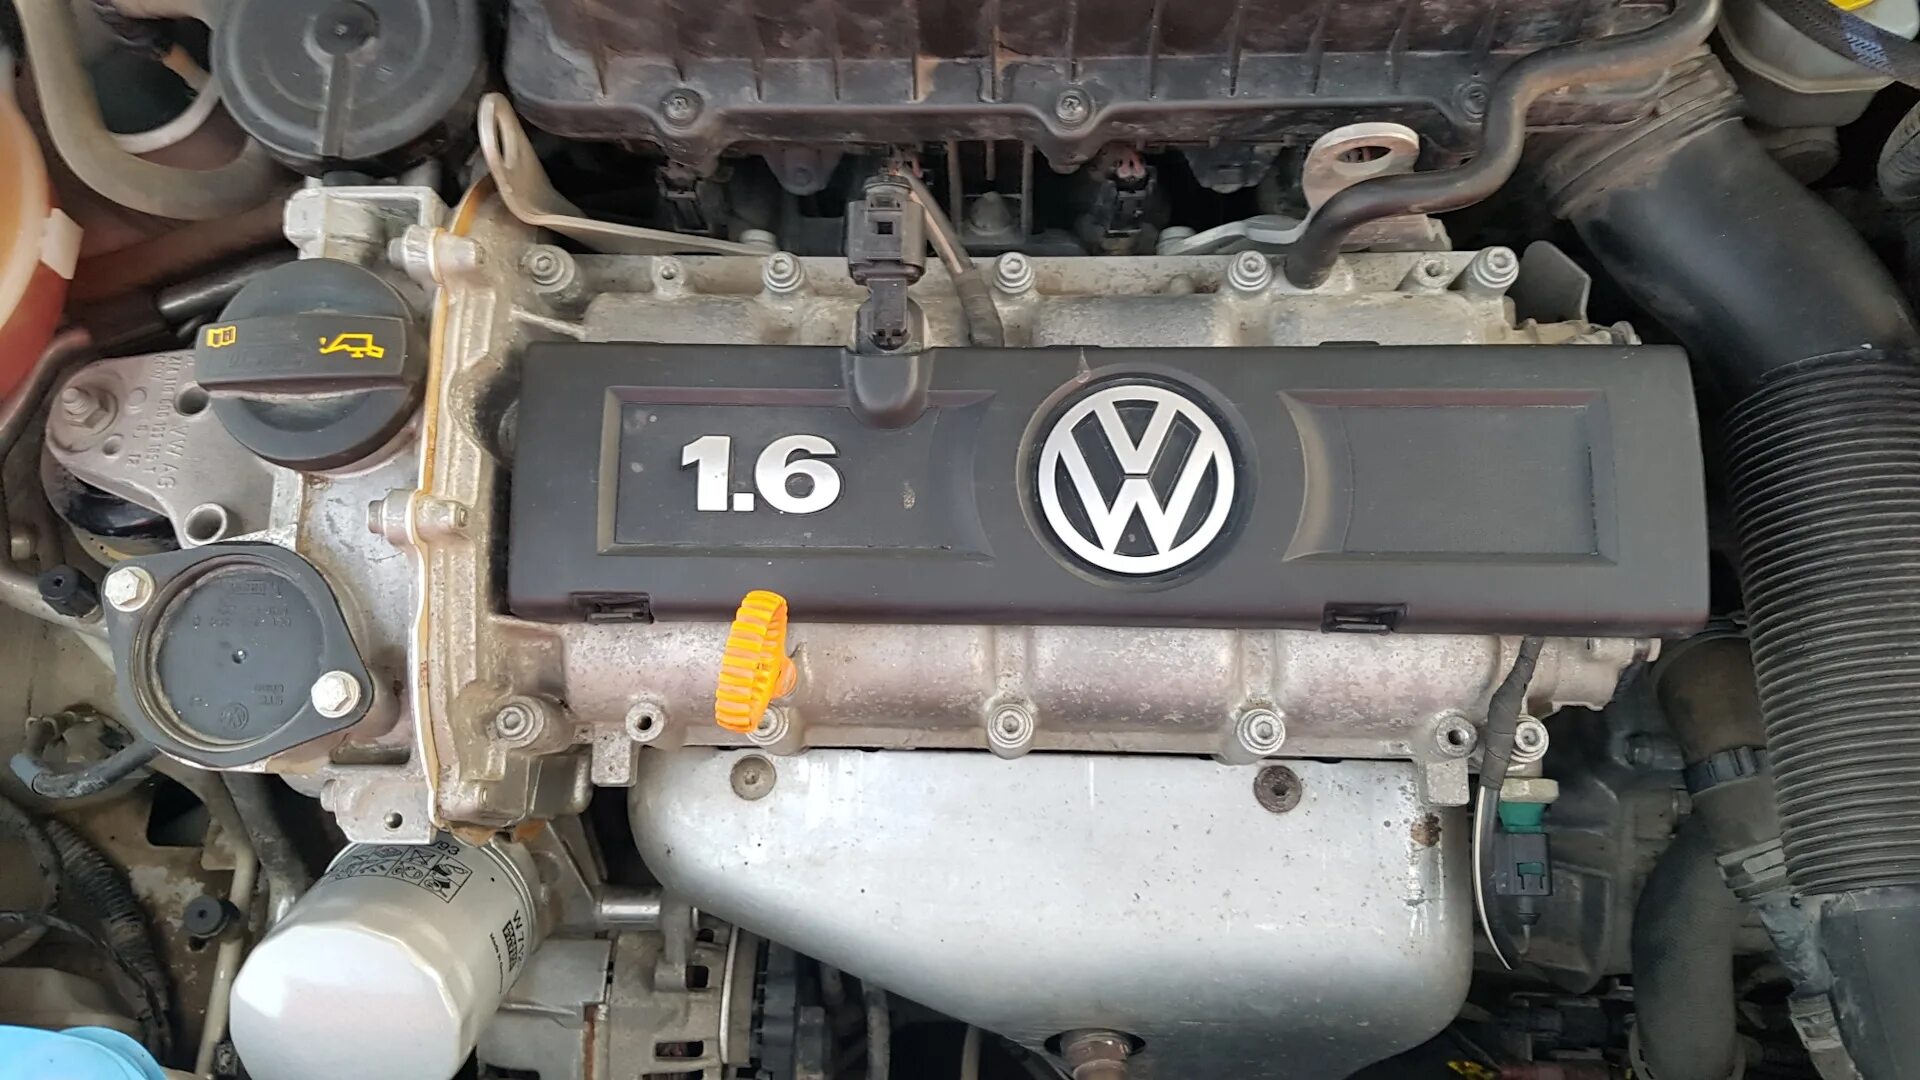 Volkswagen polo 1.6 двигателя. Двигатель Фольксваген поло 1.6. ДВС Фольксваген поло 1.6 105 л.с. Фольксваген поло двигатель 1.6 105. ДВС Фольксваген поло седан 1.6.